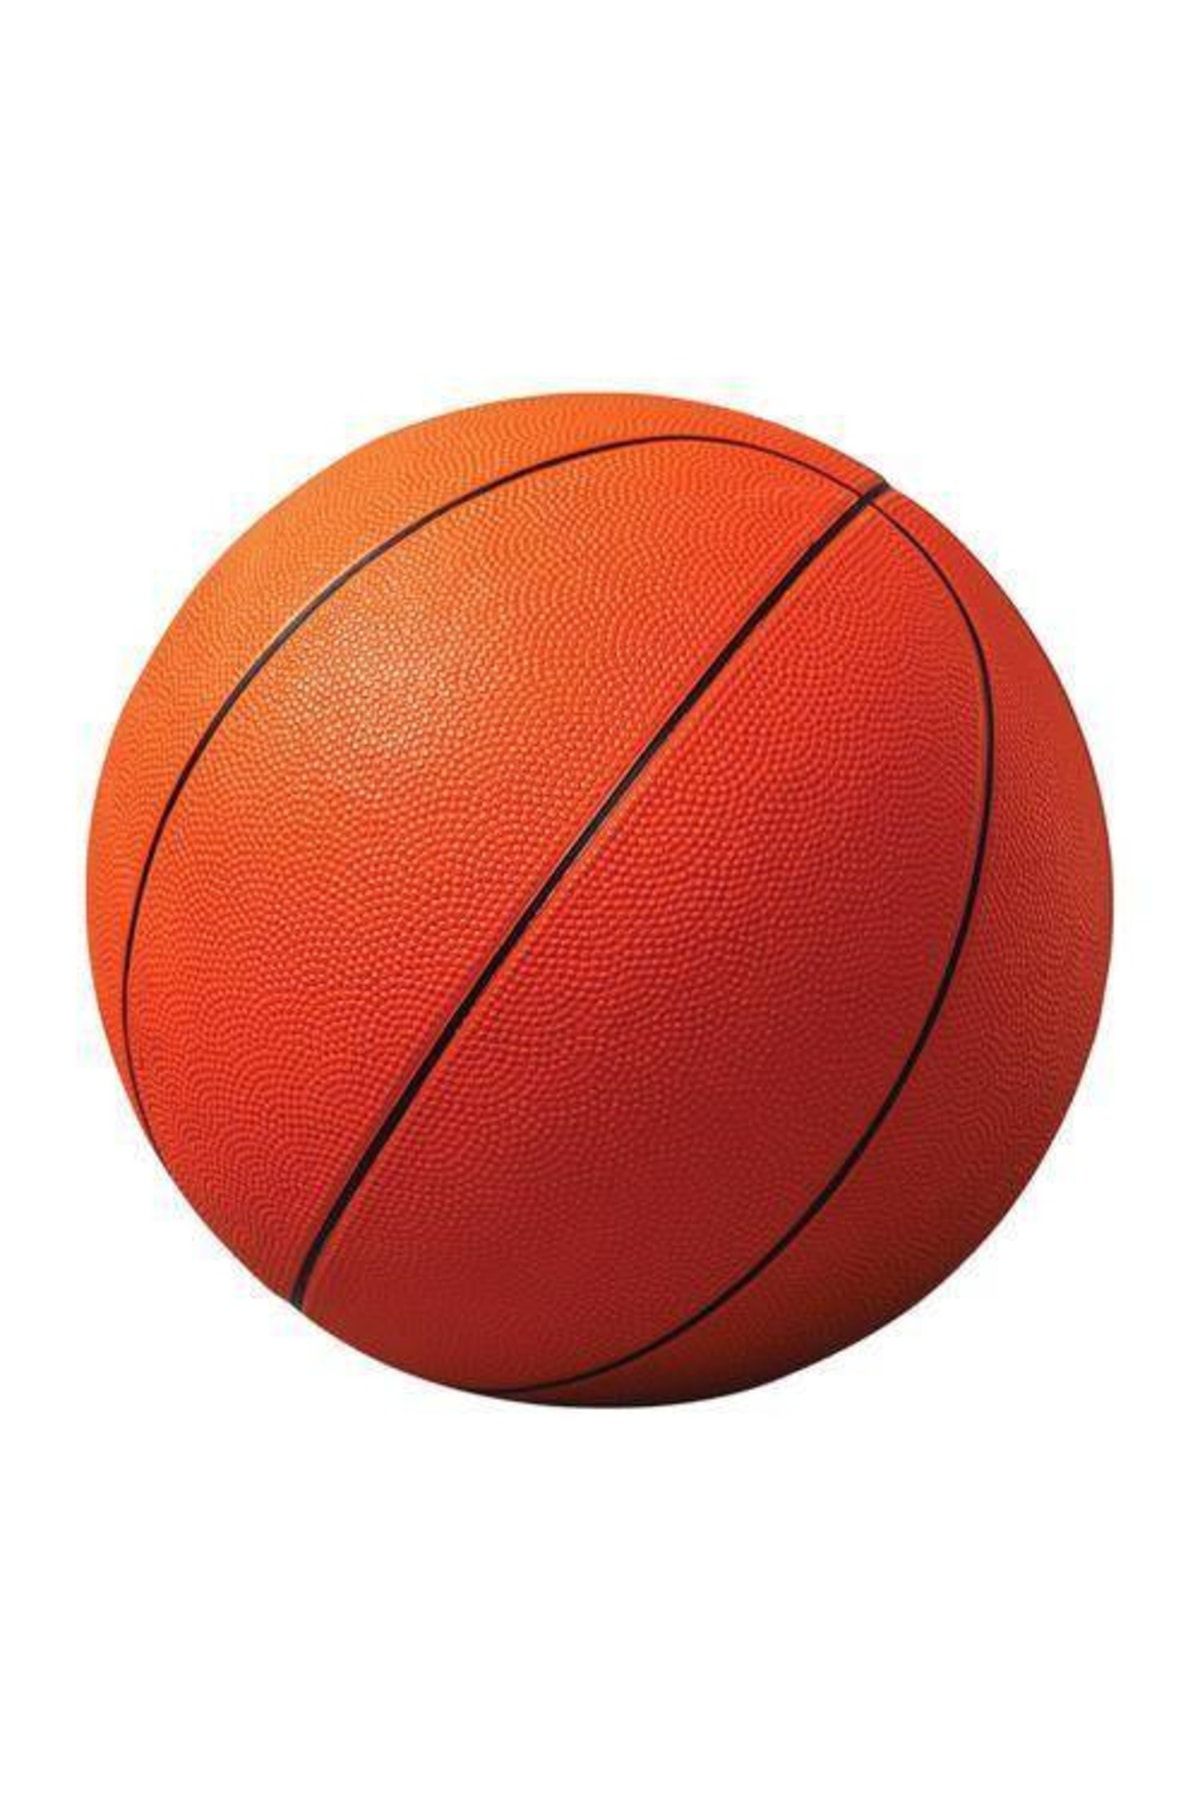 FırsatYeri 2 Adet Basketbol Maçı Için Kauçuk Profesyonel Boy Basketbol Topu